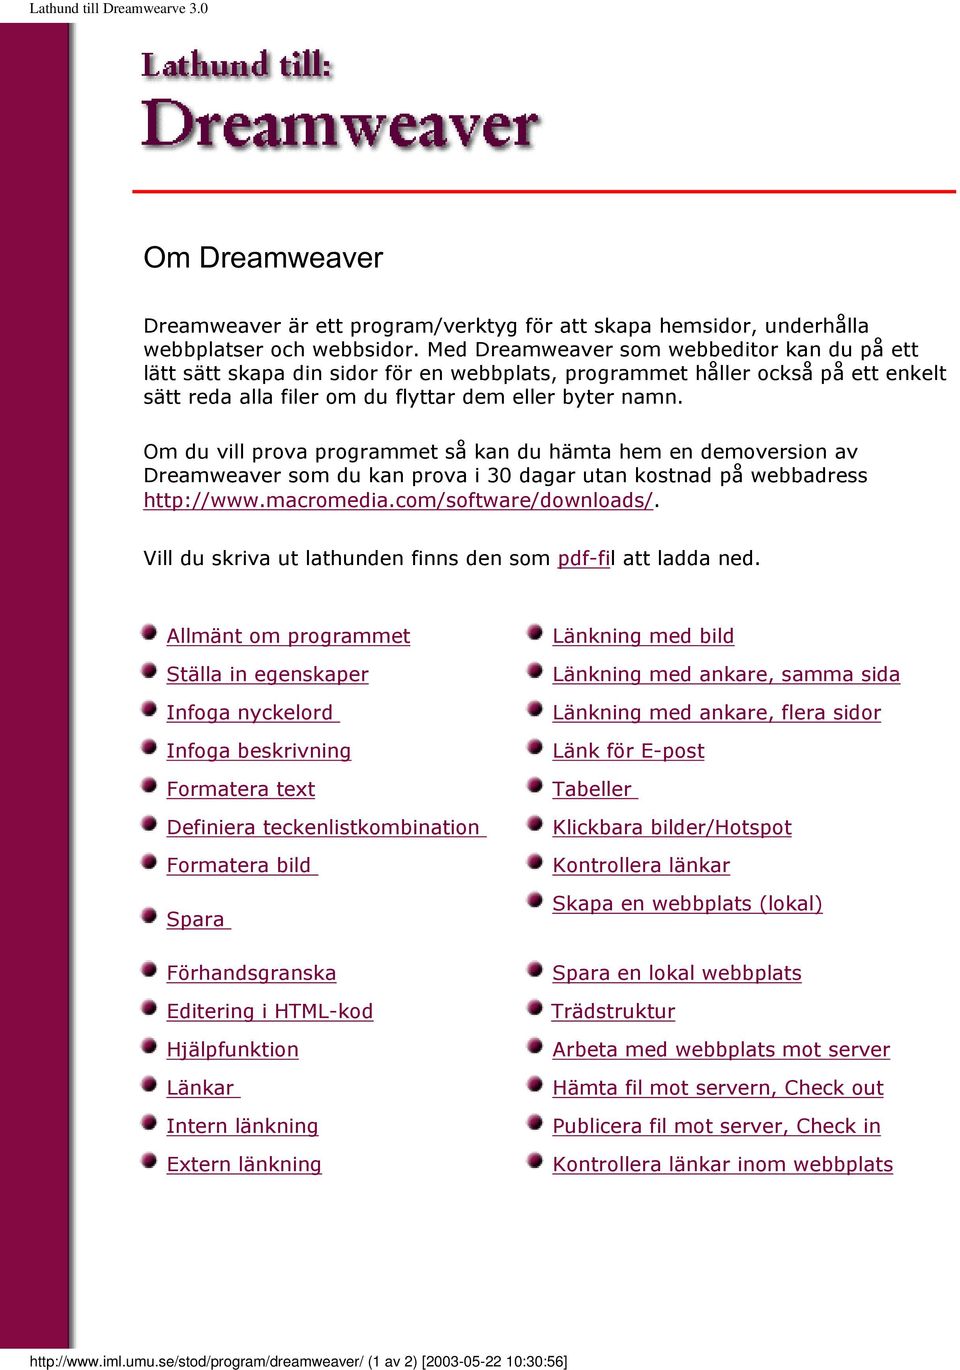 Om du vill prova programmet så kan du hämta hem en demoversion av Dreamweaver som du kan prova i 30 dagar utan kostnad på webbadress http://www.macromedia.com/software/downloads/.